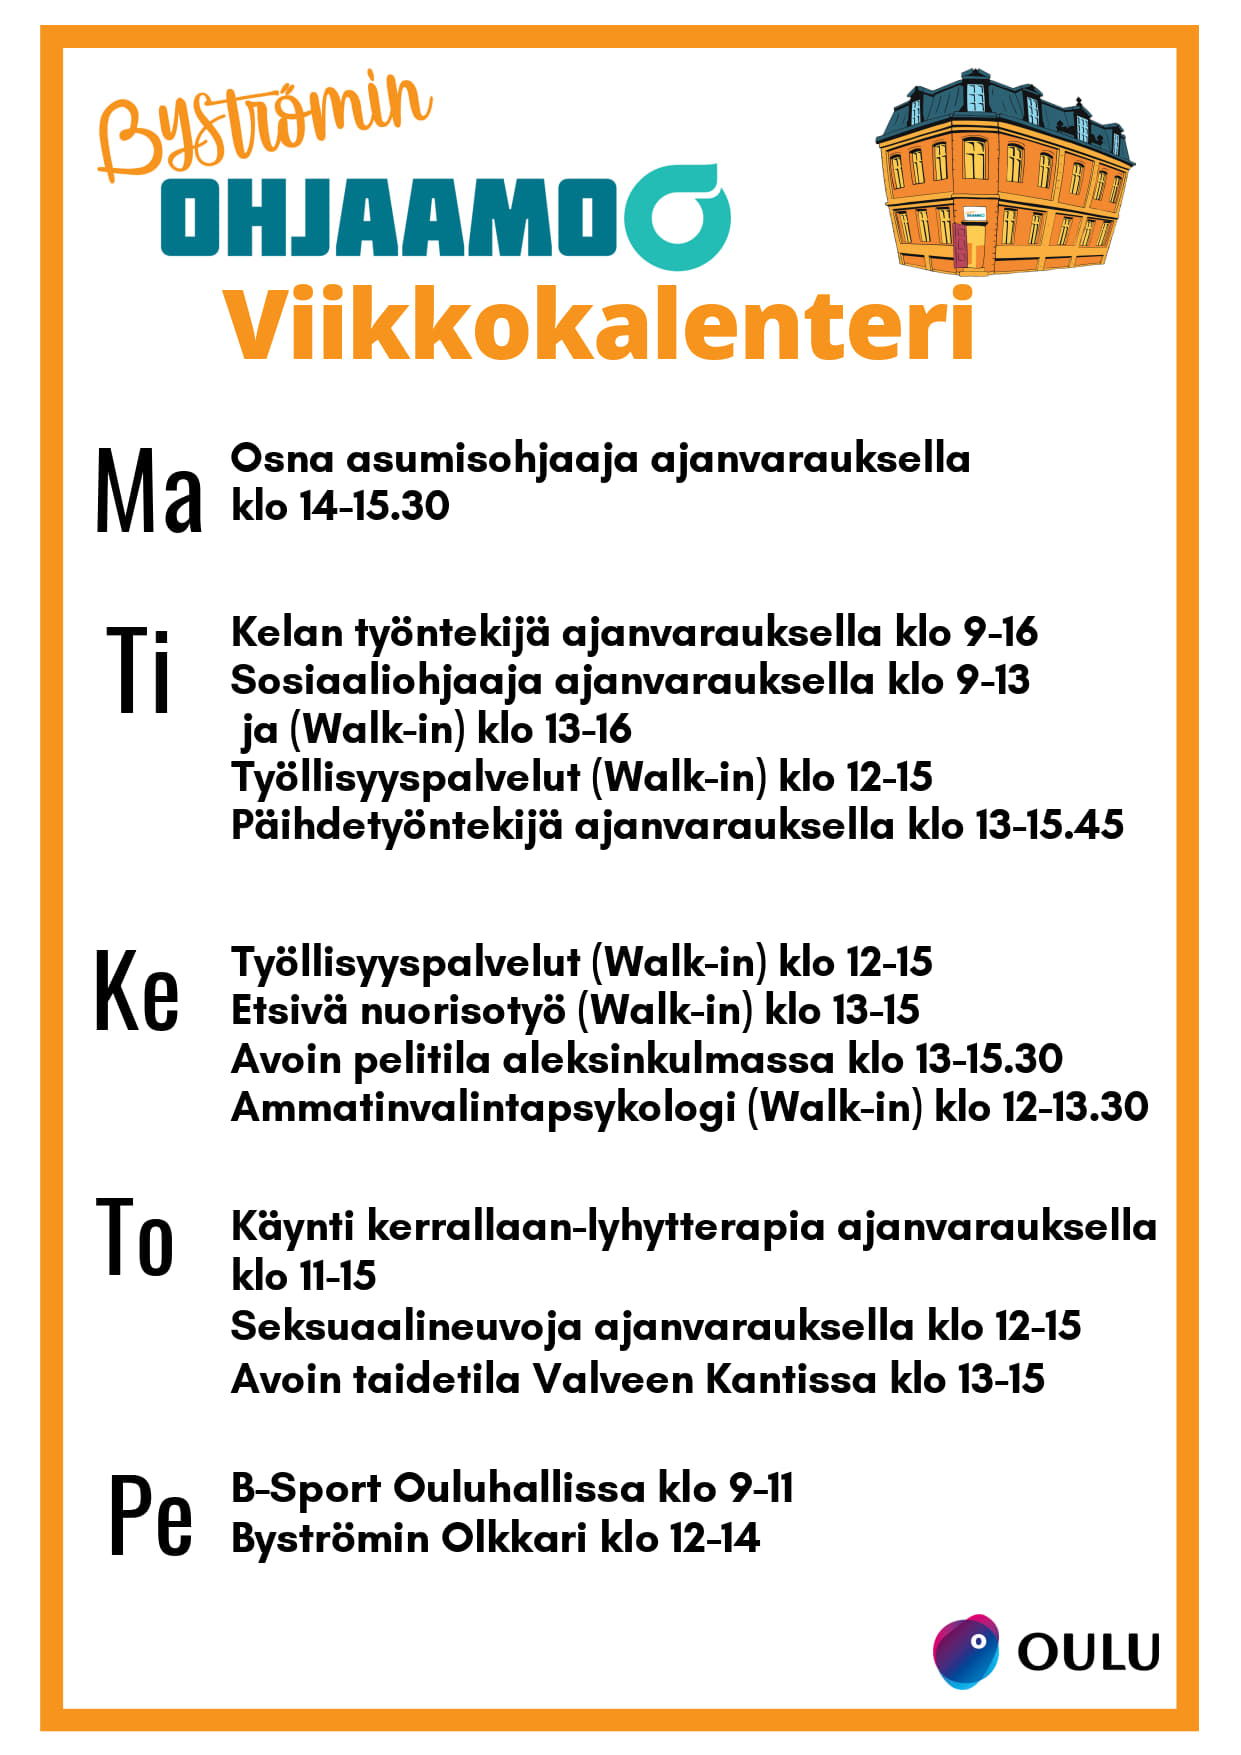 Byströmin Ohjaamon viikkokalenteri